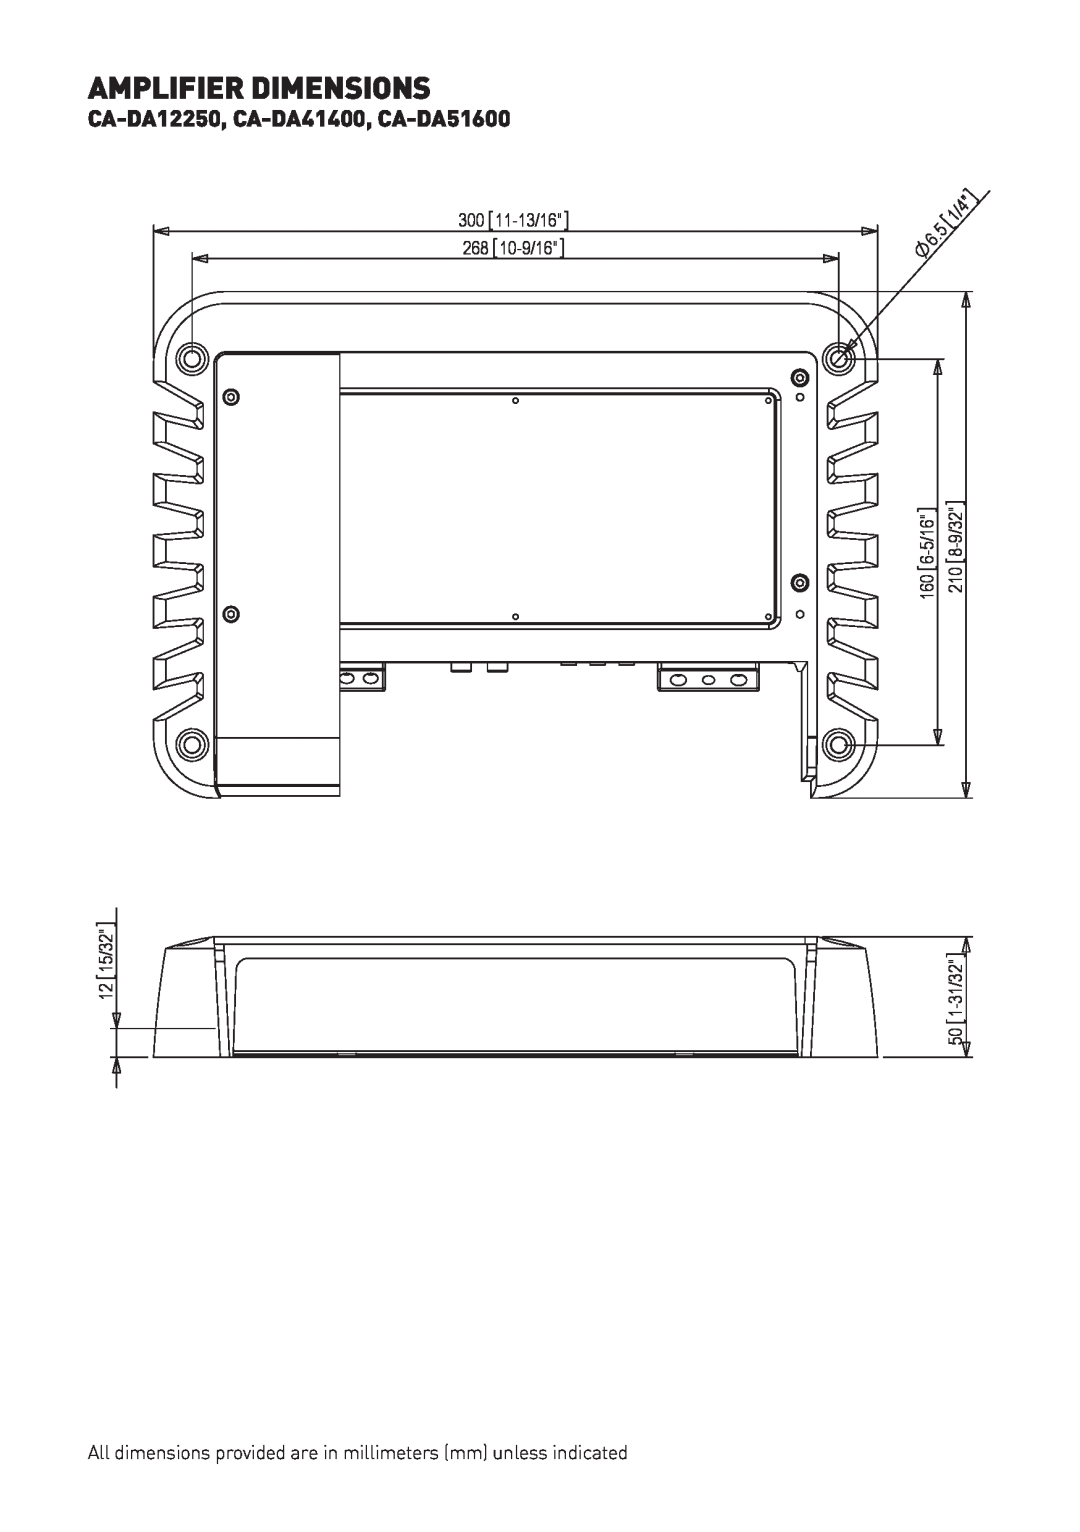 Fusion user manual Amplifier Dimensions, CA-DA12250, CA-DA41400, CA-DA51600 